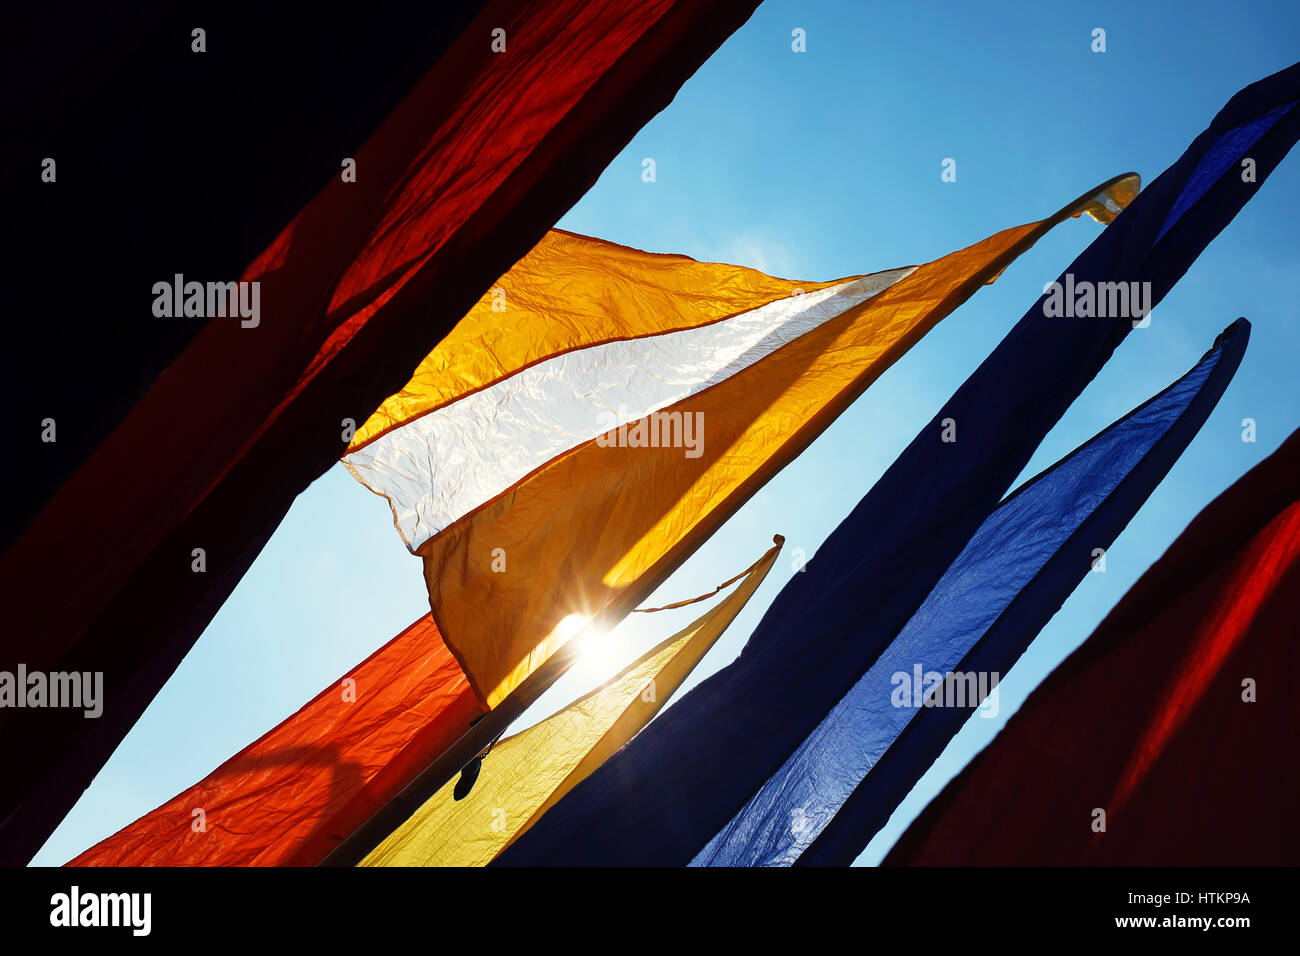 Drapeaux bannière aux couleurs vives clapote contre ciel ensoleillé bleu Banque D'Images